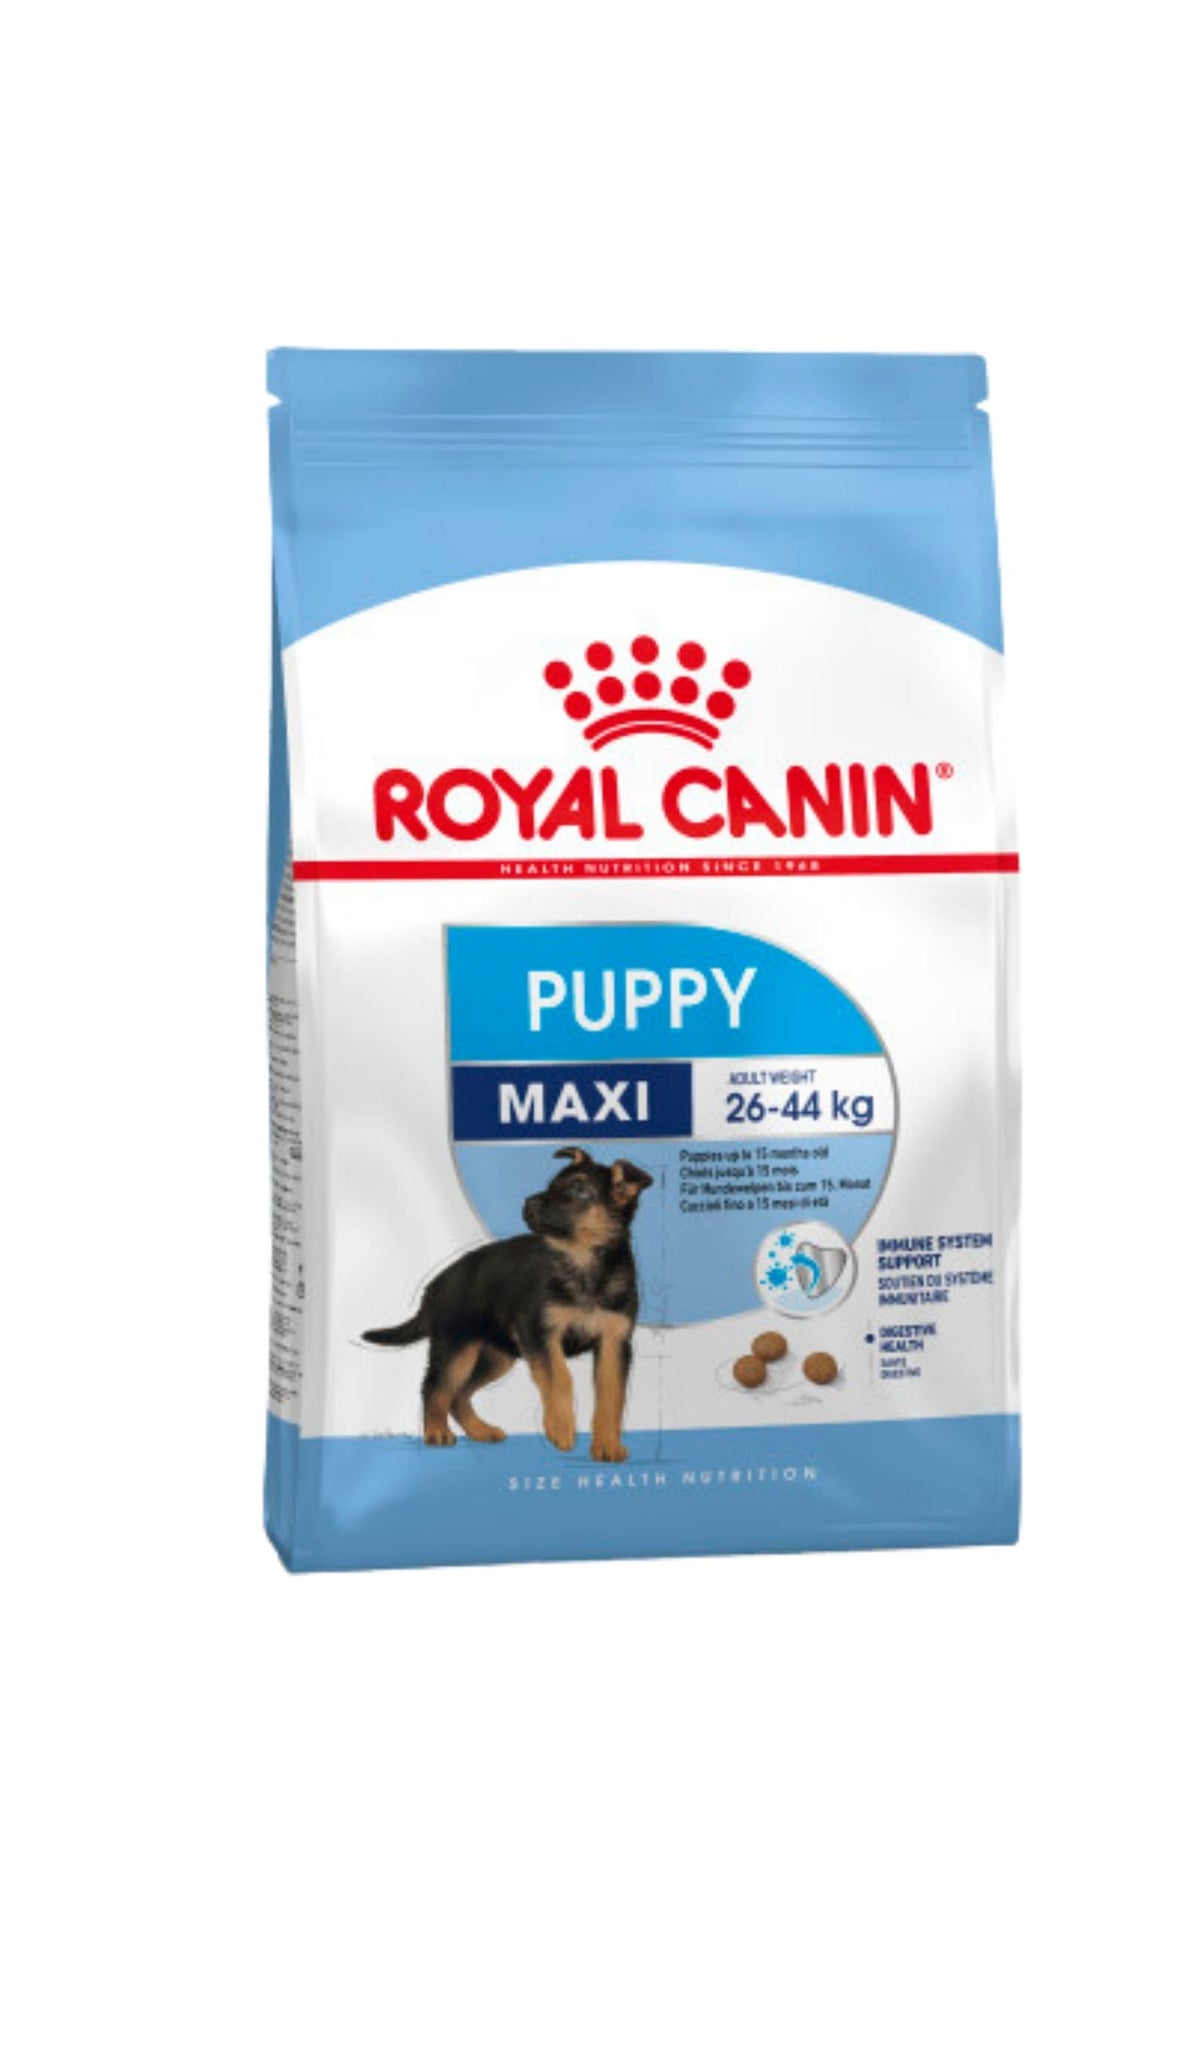 Royal Canin Maxi Puppy petbay.lk